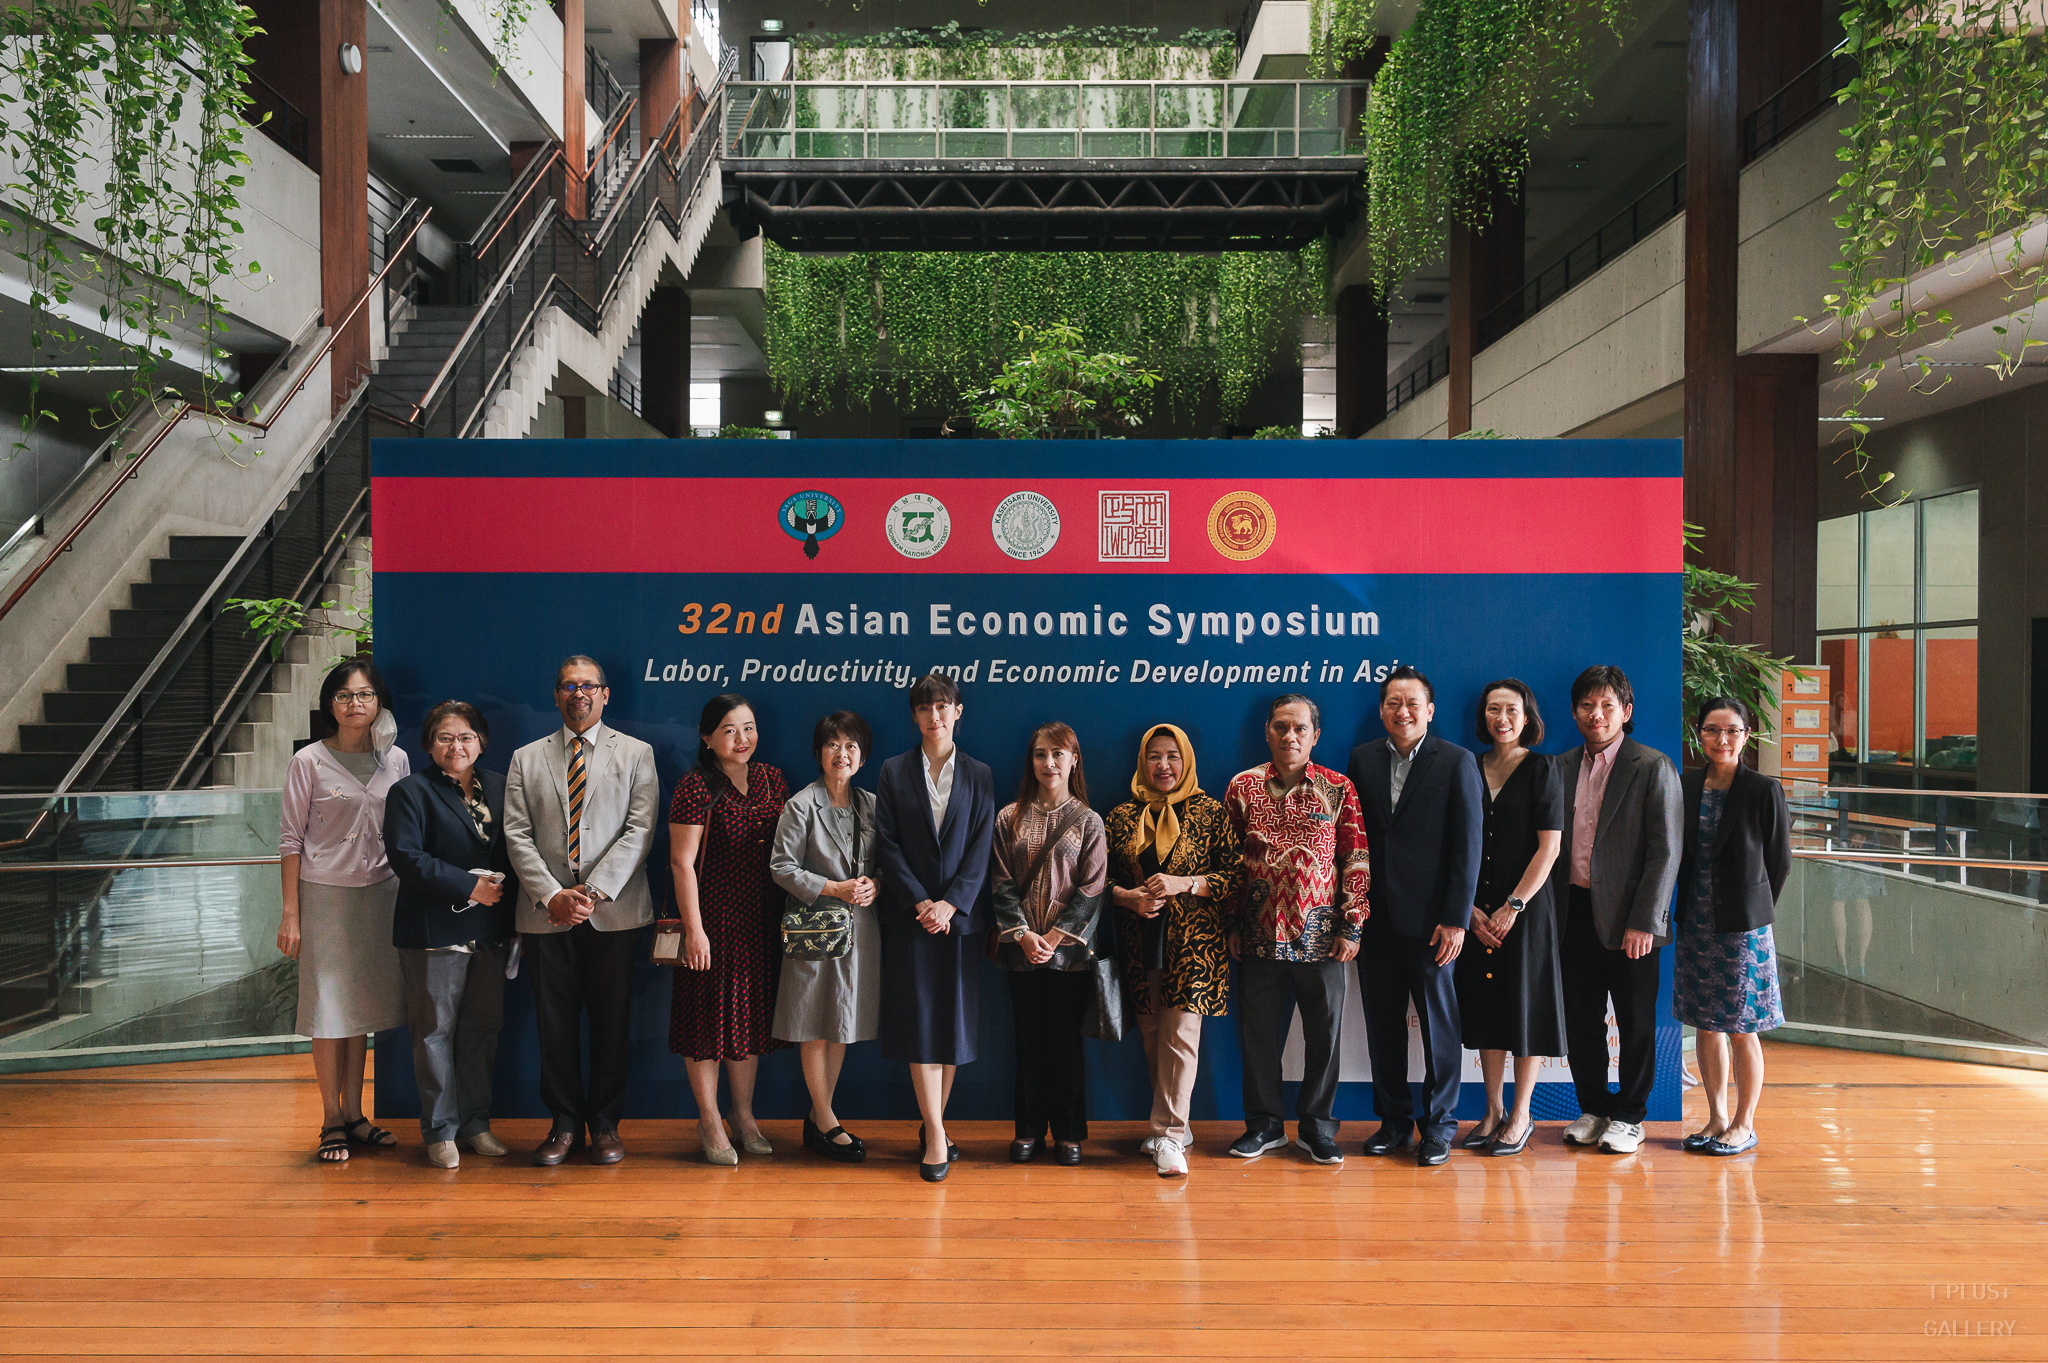 งานสัมมนาวิชาการระดับนานาชาติ 32nd Asian Economic Symposium 2023 ภายใต้หัวข้อ “Labor, Productivity and Economic Development in Asia” ในวันพฤหัสบดีที่ 9 พฤศจิกายน 2566 ณ ห้อง EC 5205 และวันศุกร์ที่ 10 พฤศจิกายน 2566 ณ ห้อง 5628 อาคารปฏิบัติการ คณะเศรษฐศาสตร์ มหาวิทยาลัยเกษตรศาสตร์